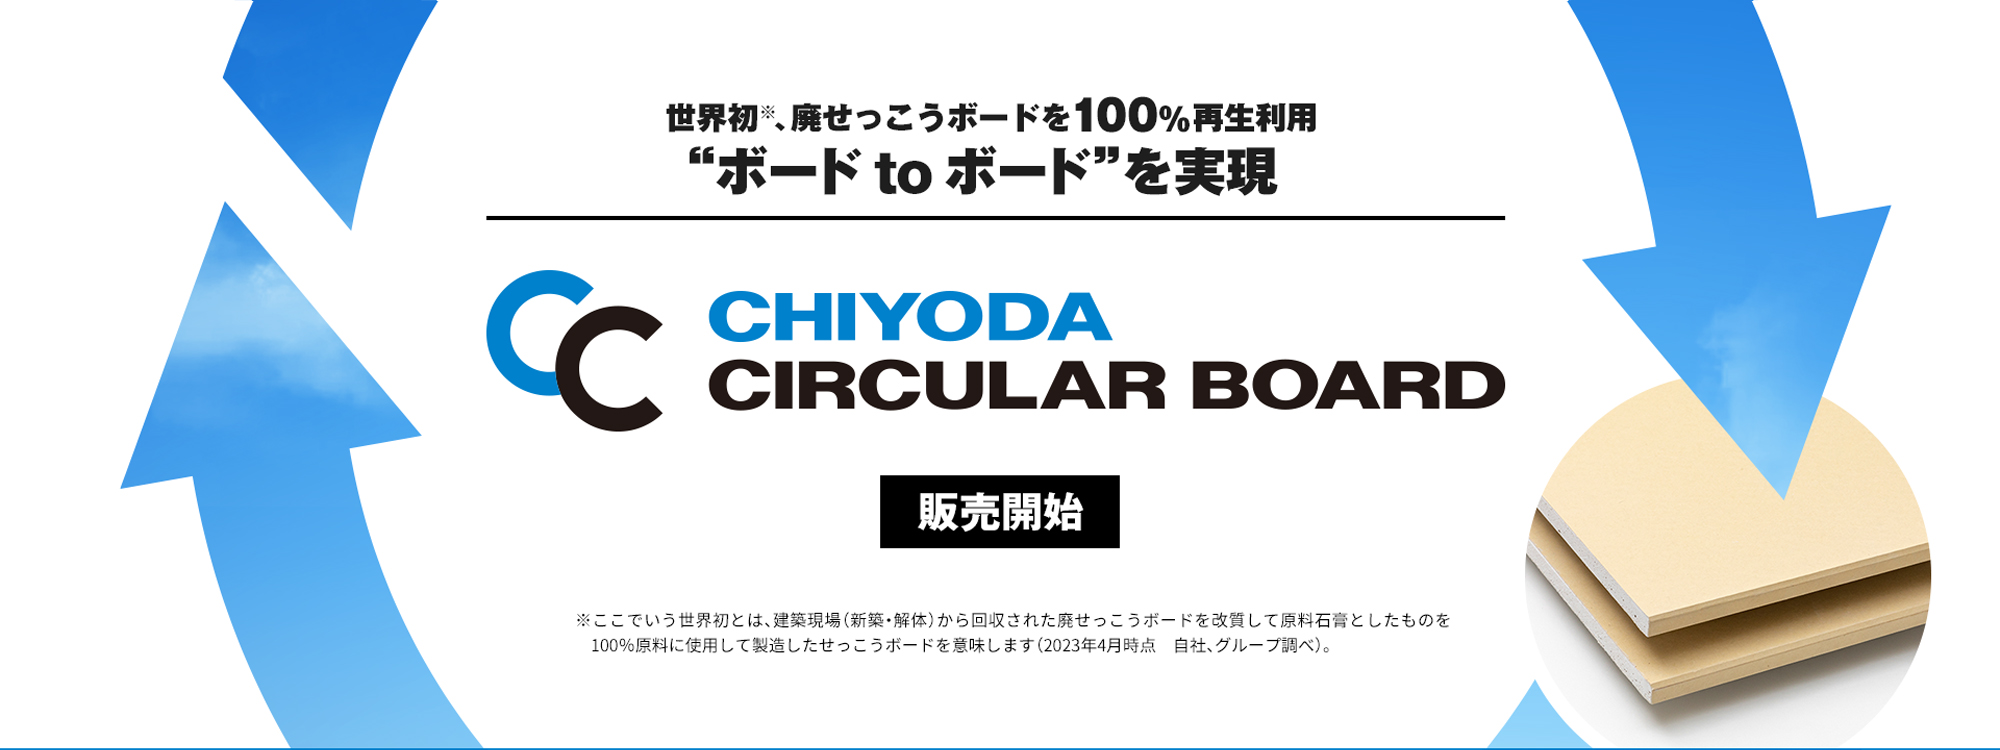 CHIYODA CIRCULAR BOARD